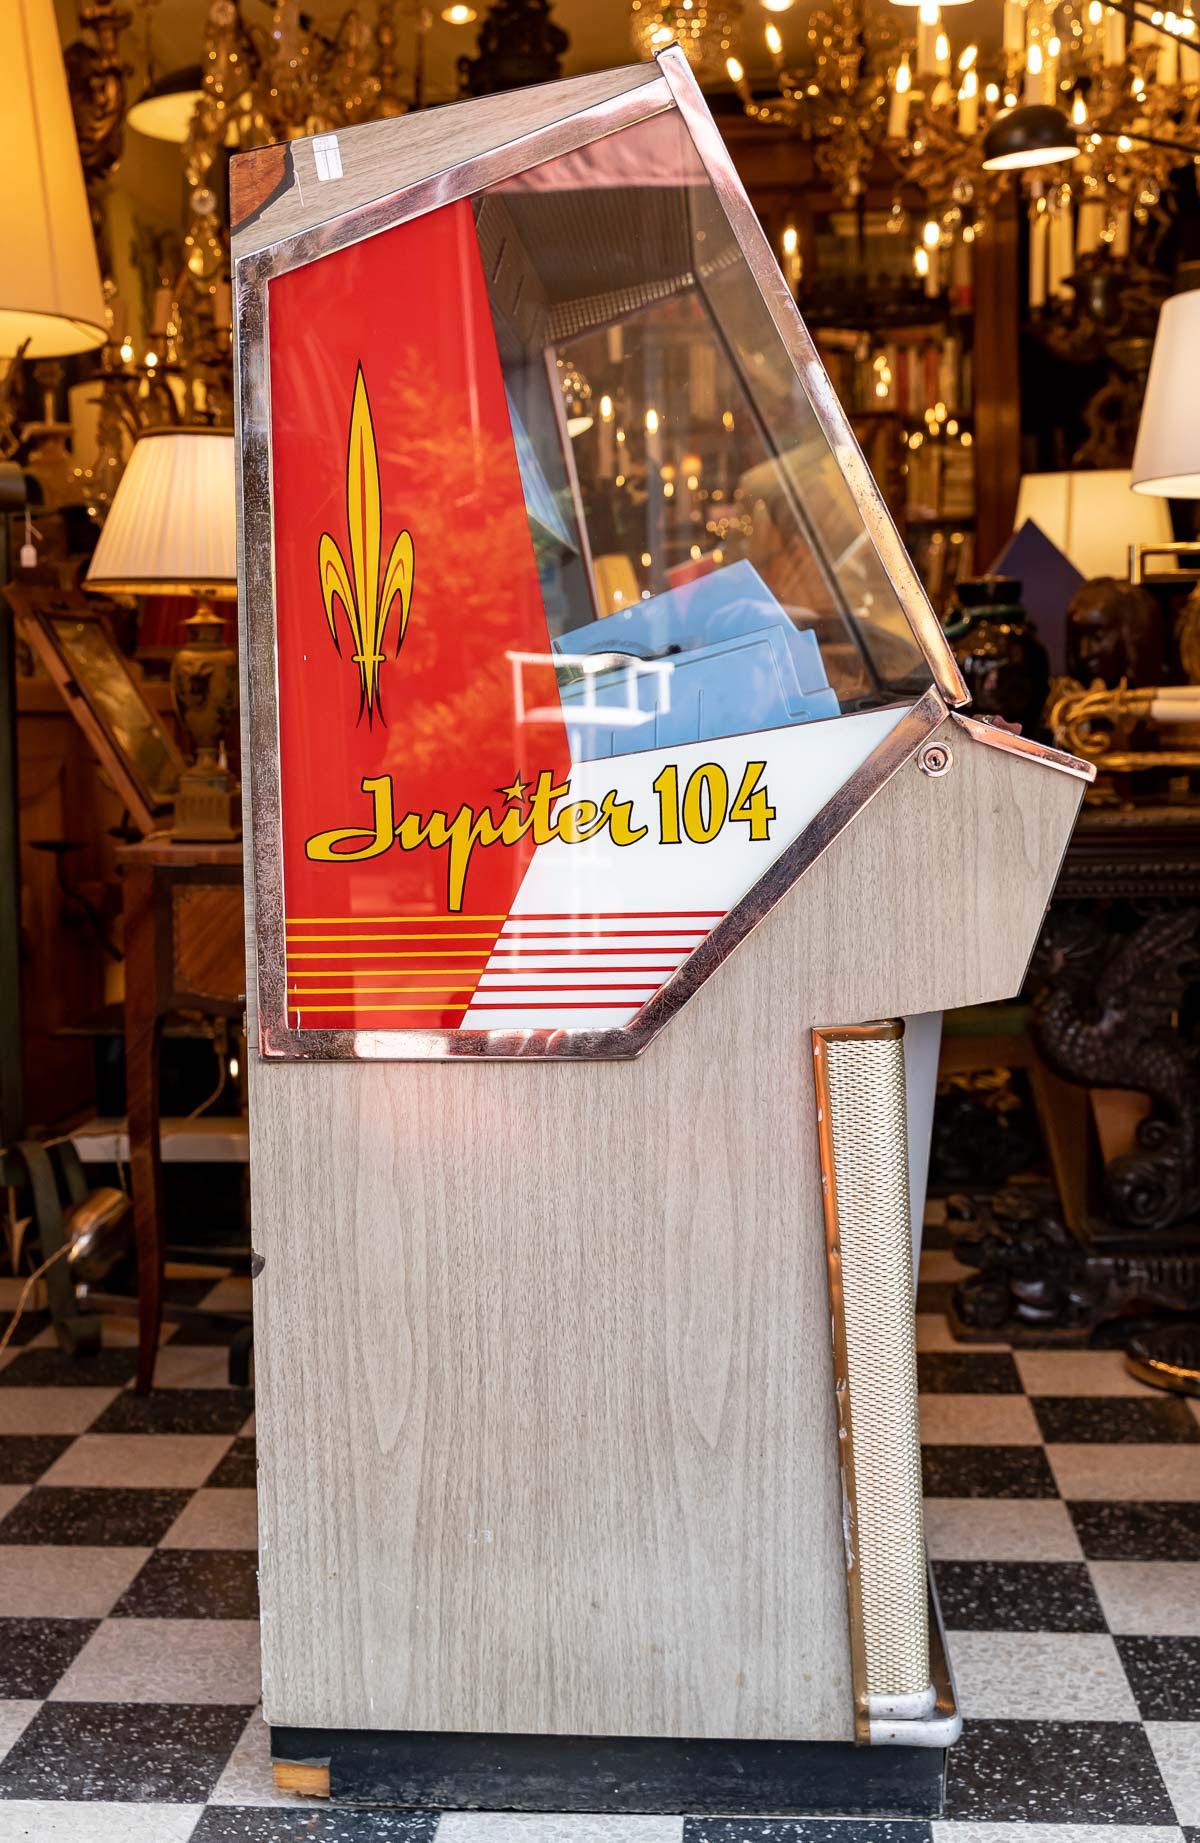 Jukebox Jupiter 104, Jahr 1960.

Jukebox Jupiter 104, muss vollständig restauriert werden, Baujahr 1960.

Abmessungen: H: 142cm, B: 87cm, T: 66cm